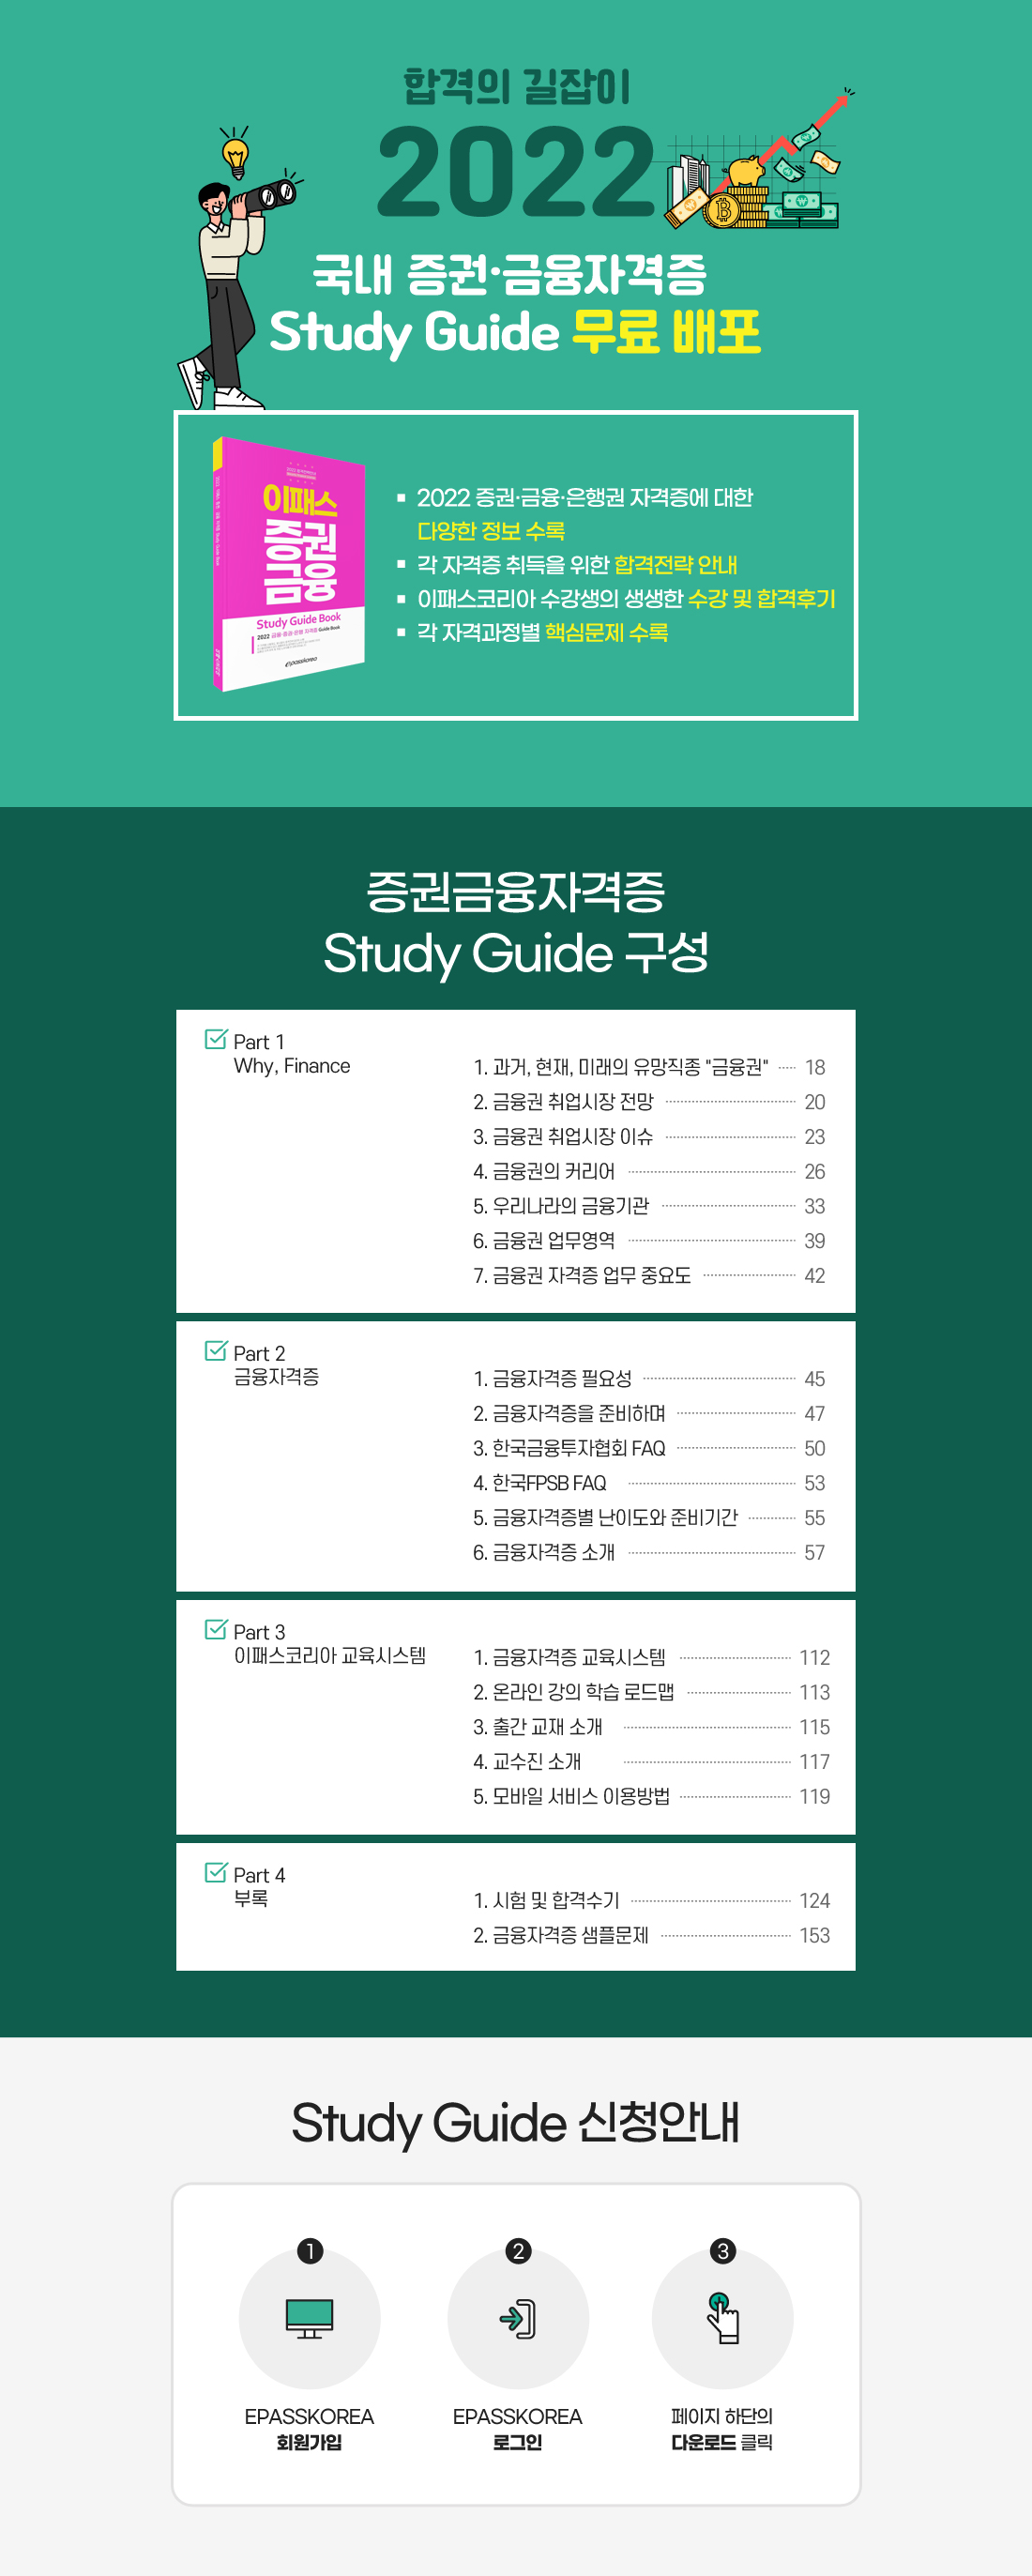 AICPA & CMA Study Guide 무료 배포